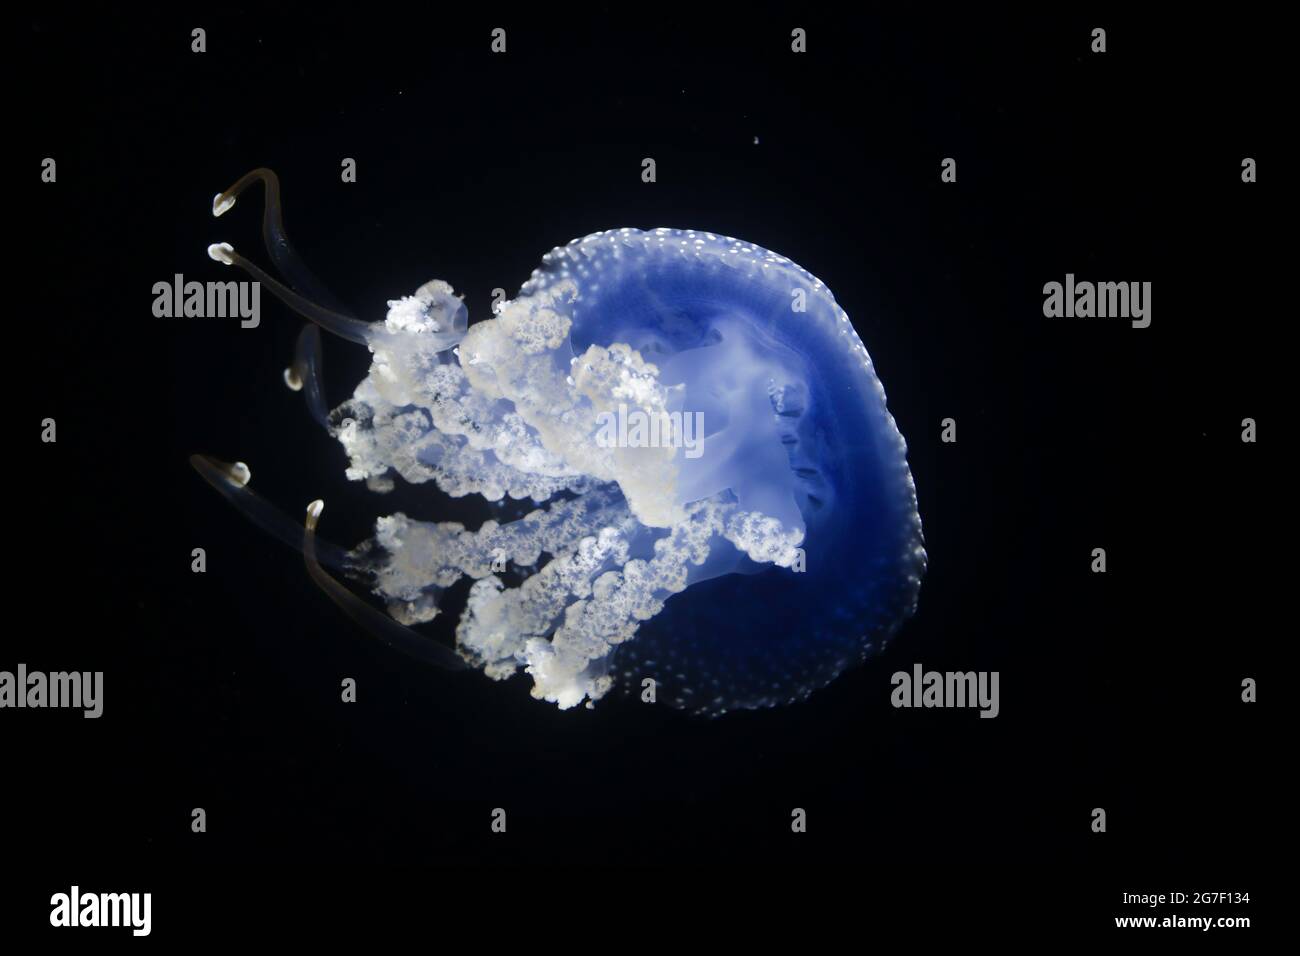 Vista dal basso di una medusa bianca australiana nota anche come campana galleggiante (Phyllorhiza punctata). In un acquario con sfondo nero. Foto Stock